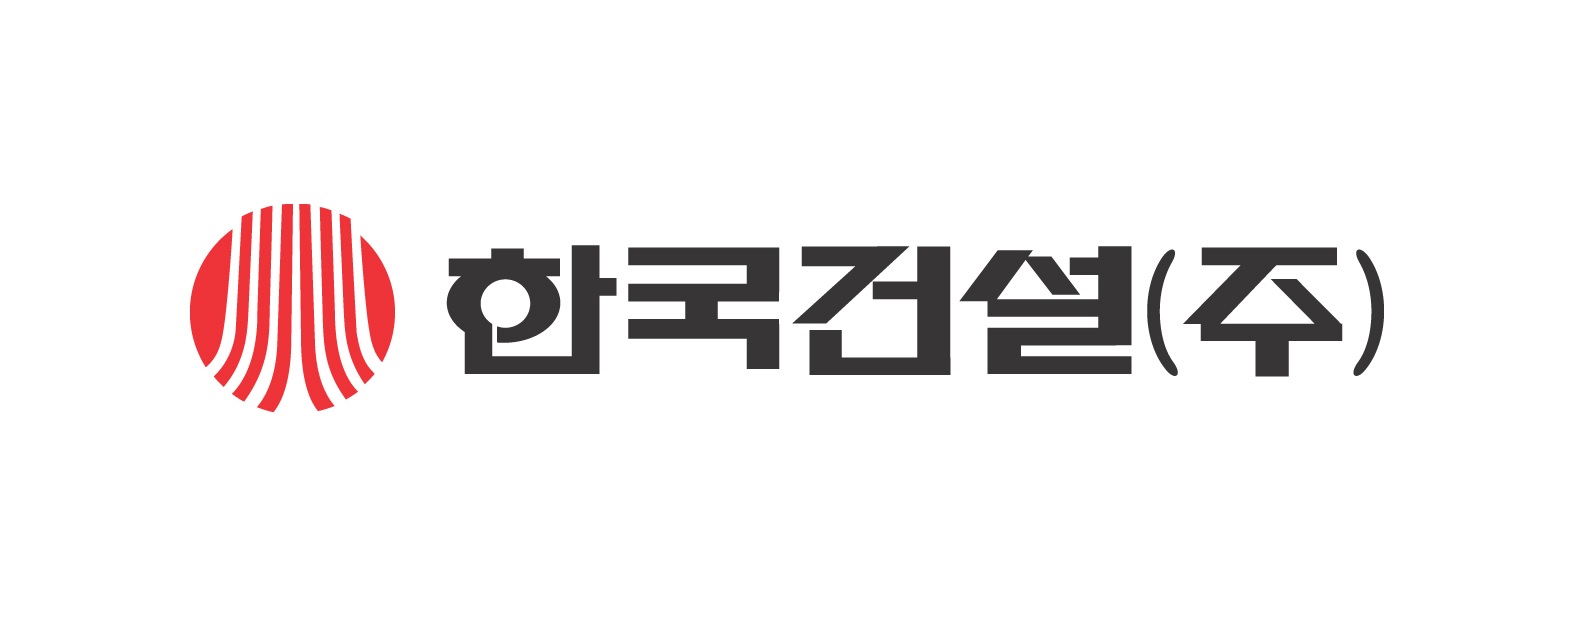 한국건설(주)의 그룹인 한국건설의 로고